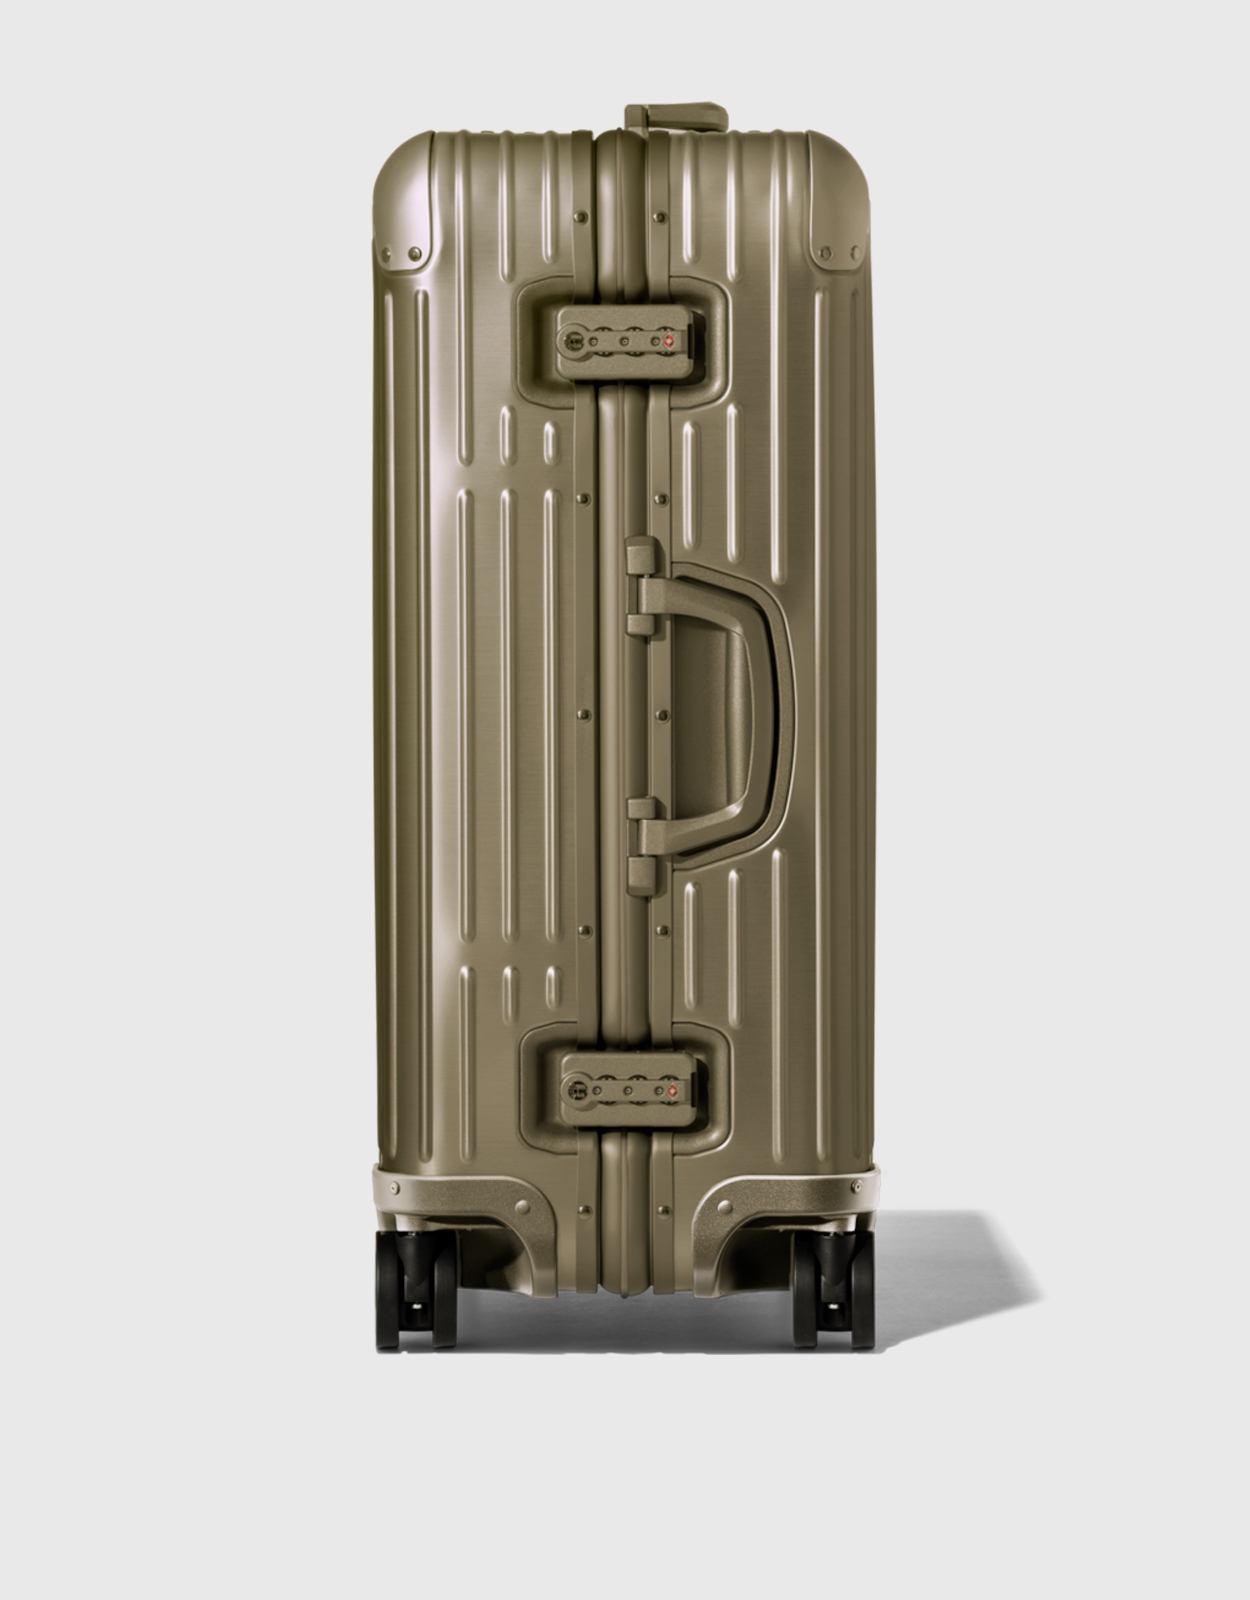 Original Check-In M Aluminum Suitcase, Silver